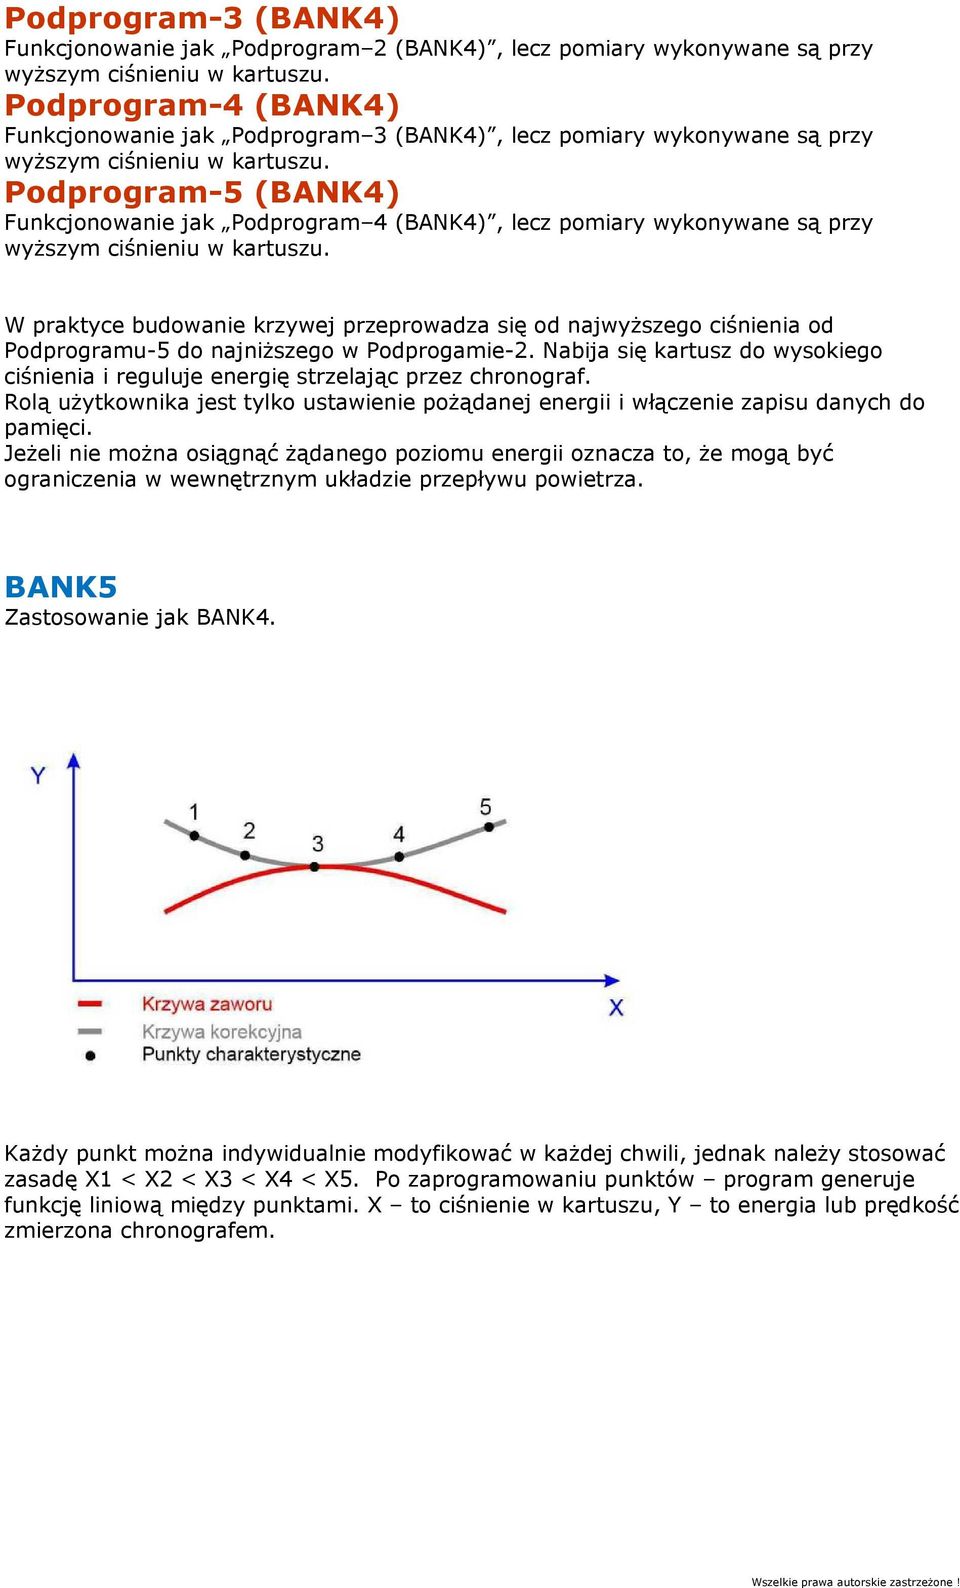 Podprogram-5 (BANK4) Funkcjonowanie jak Podprogram 4 (BANK4), lecz pomiary wykonywane są przy wyższym ciśnieniu w kartuszu.